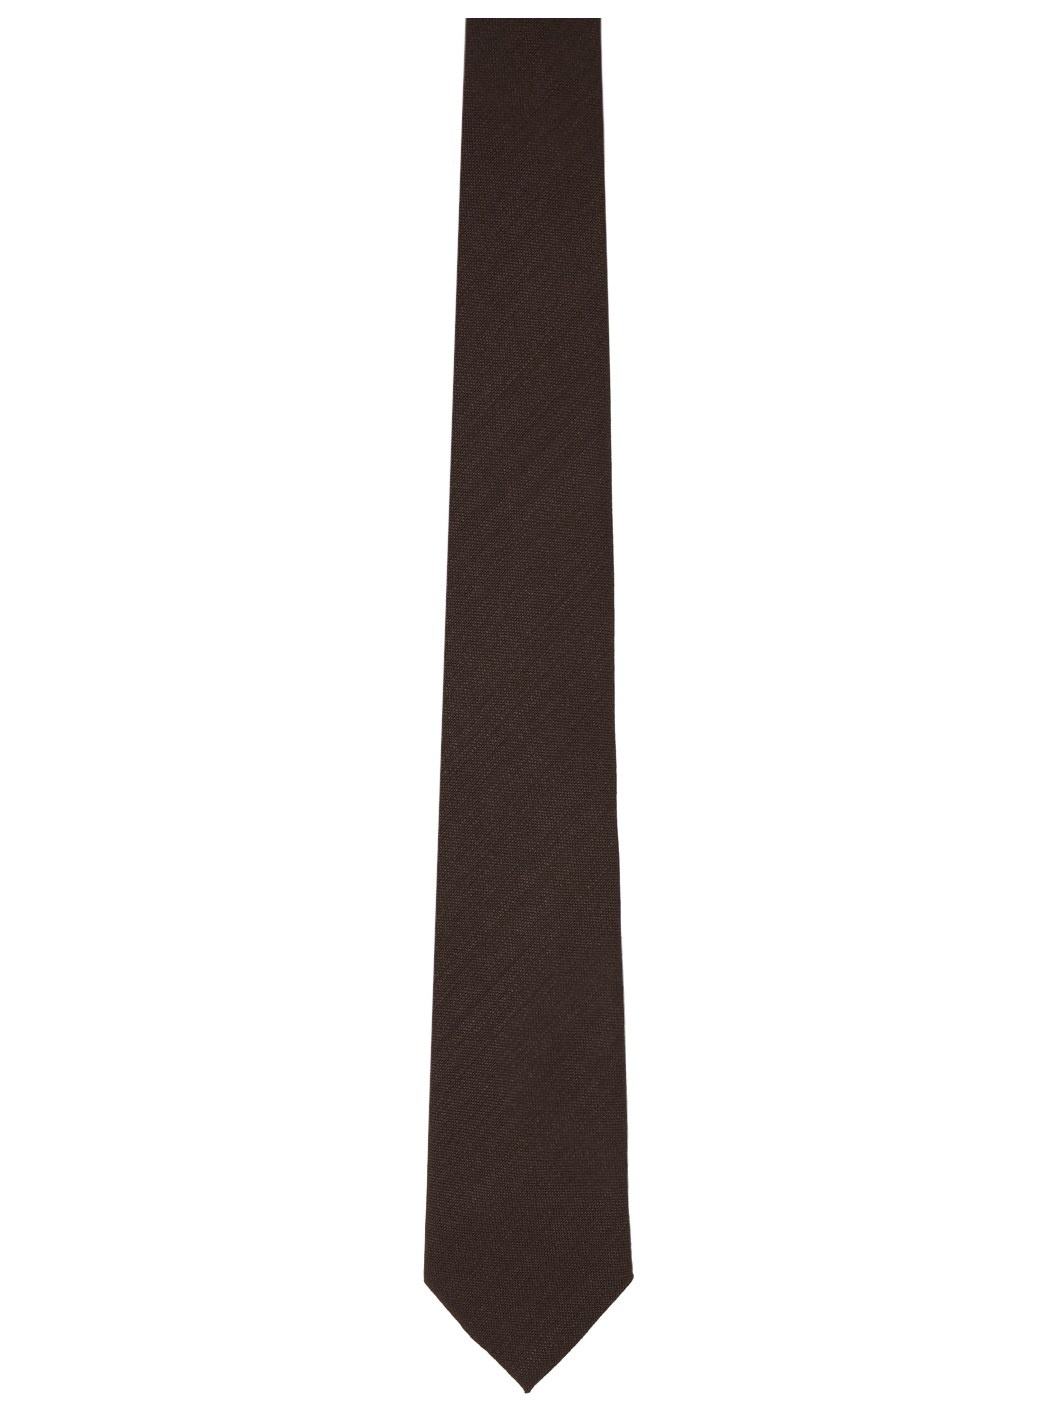 Brown Textured Tie - 1